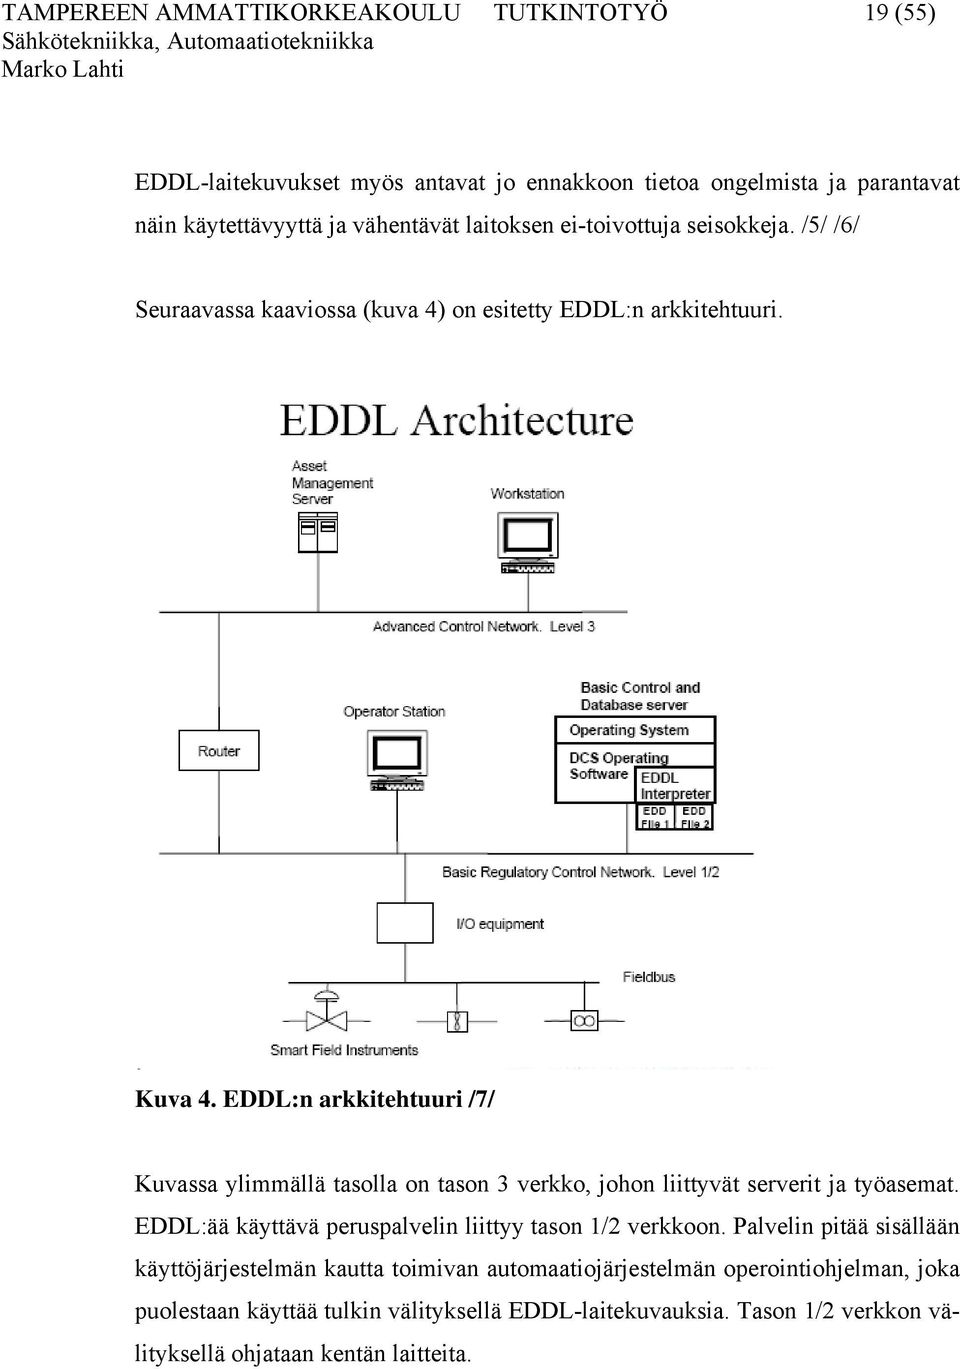 EDDL:n arkkitehtuuri /7/ Kuvassa ylimmällä tasolla on tason 3 verkko, johon liittyvät serverit ja työasemat. EDDL:ää käyttävä peruspalvelin liittyy tason 1/2 verkkoon.